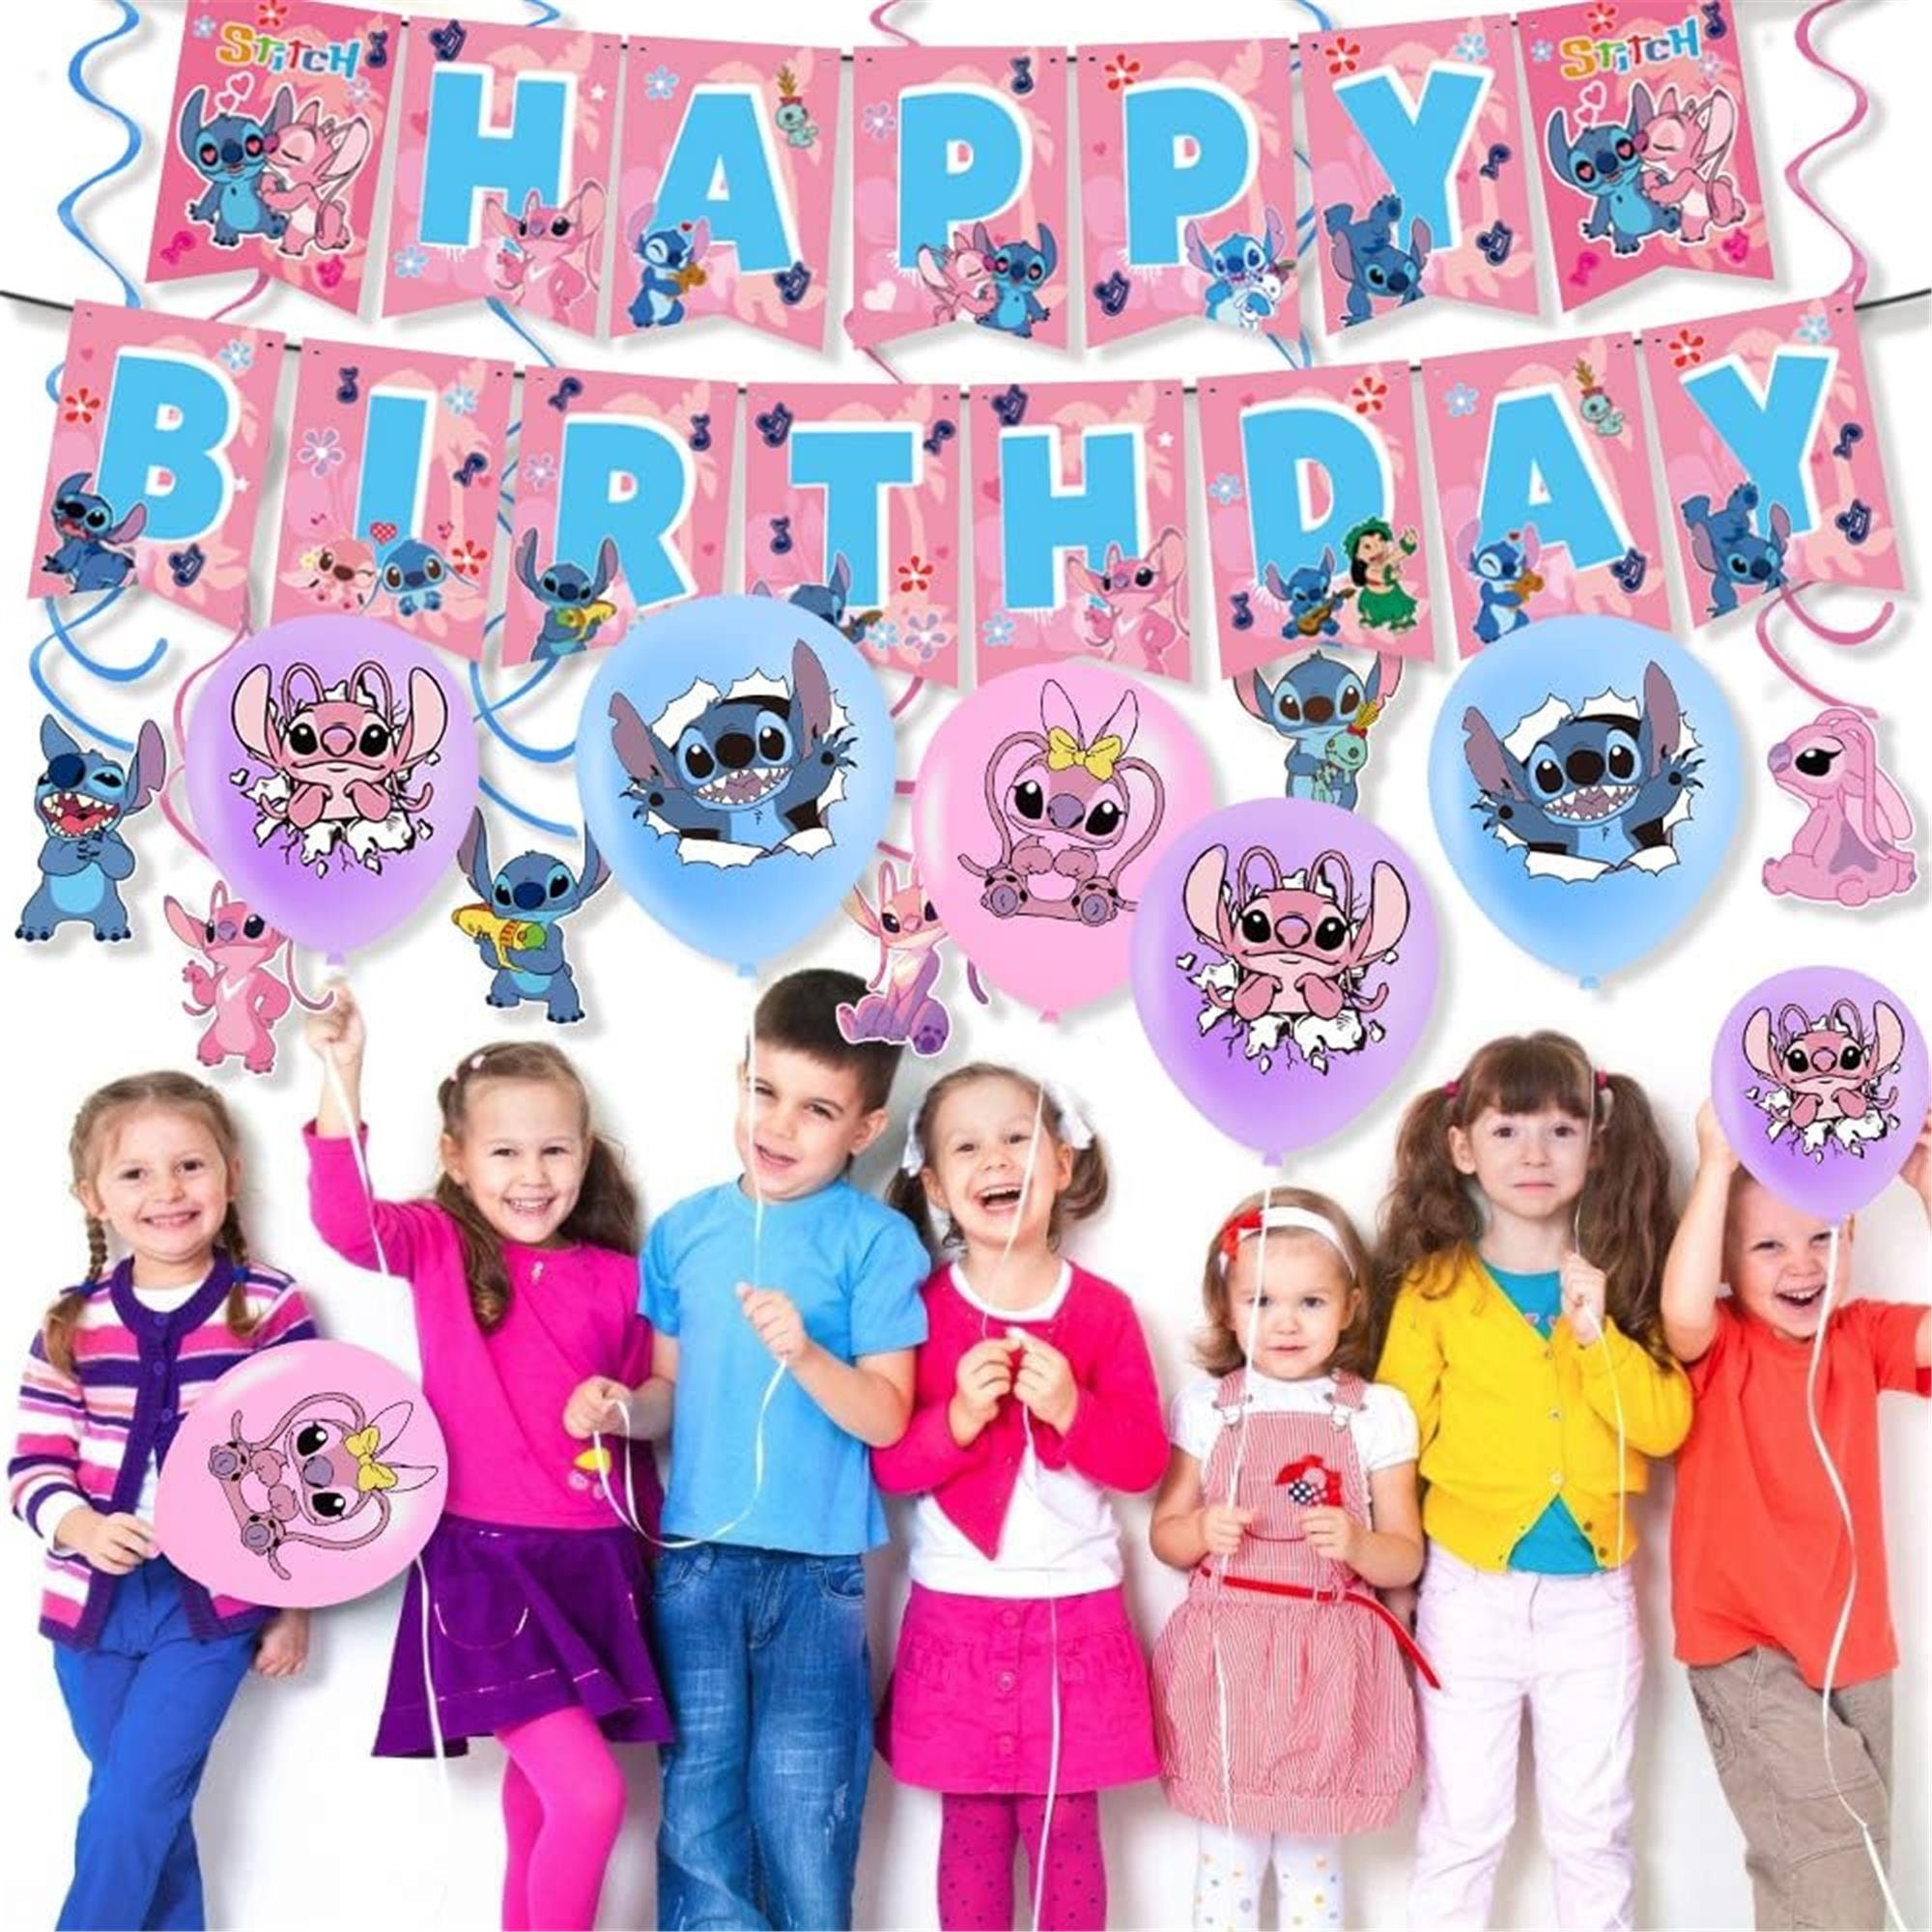  Lilo and Stitch - Suministros para fiestas, juego de 103 piezas  de decoraciones de cumpleaños que incluye pancarta, globos, calcomanías,  remolinos colgantes, adornos para cupcakes, mantel para niños y niñas,  fiesta